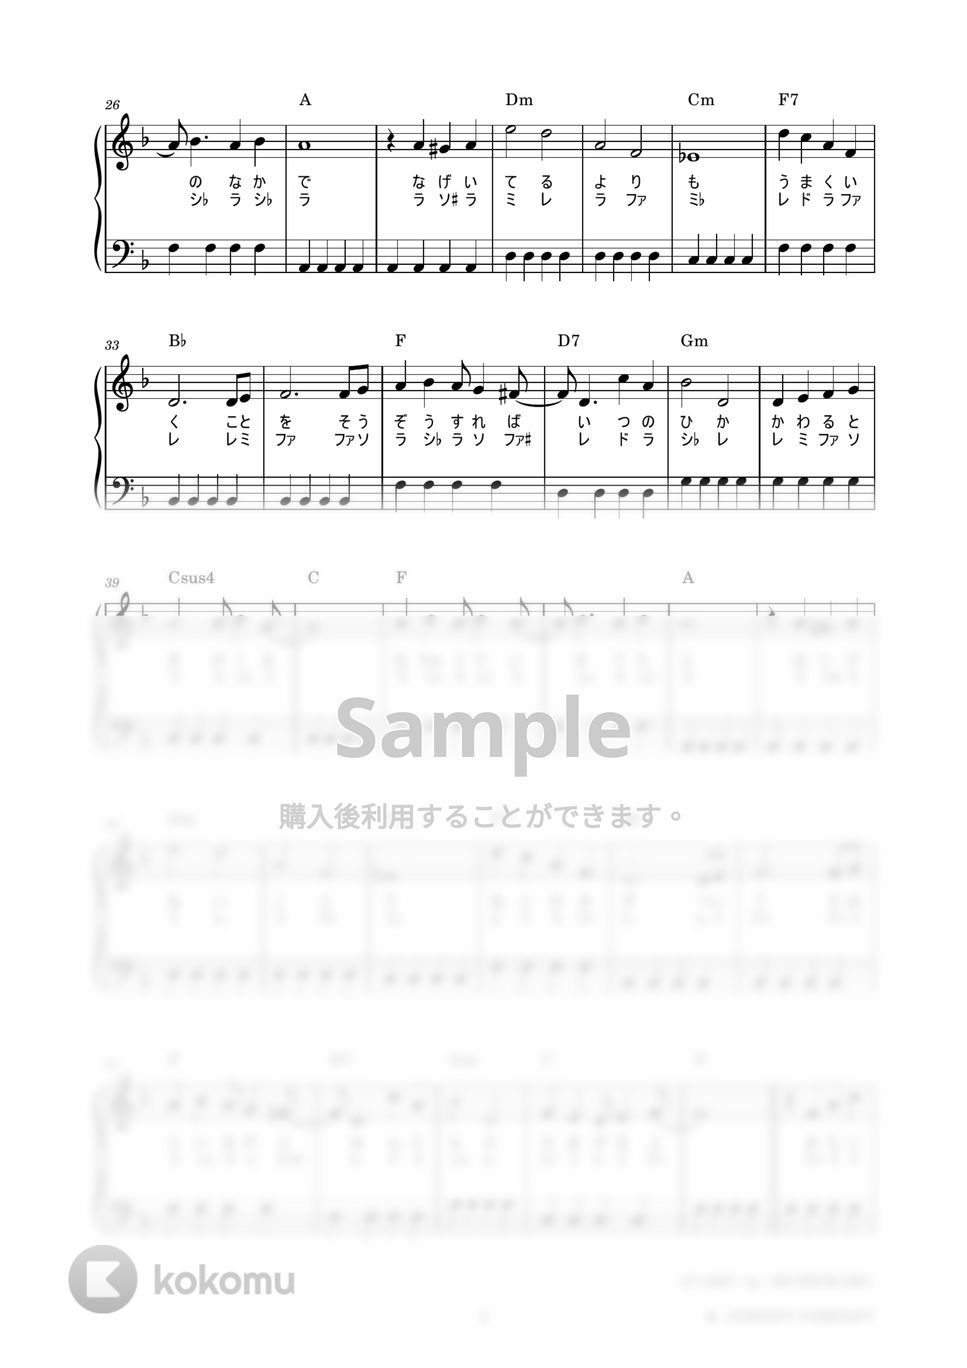 嵐 - Happiness (かんたん / 歌詞付き / ドレミ付き / 初心者) by piano.tokyo